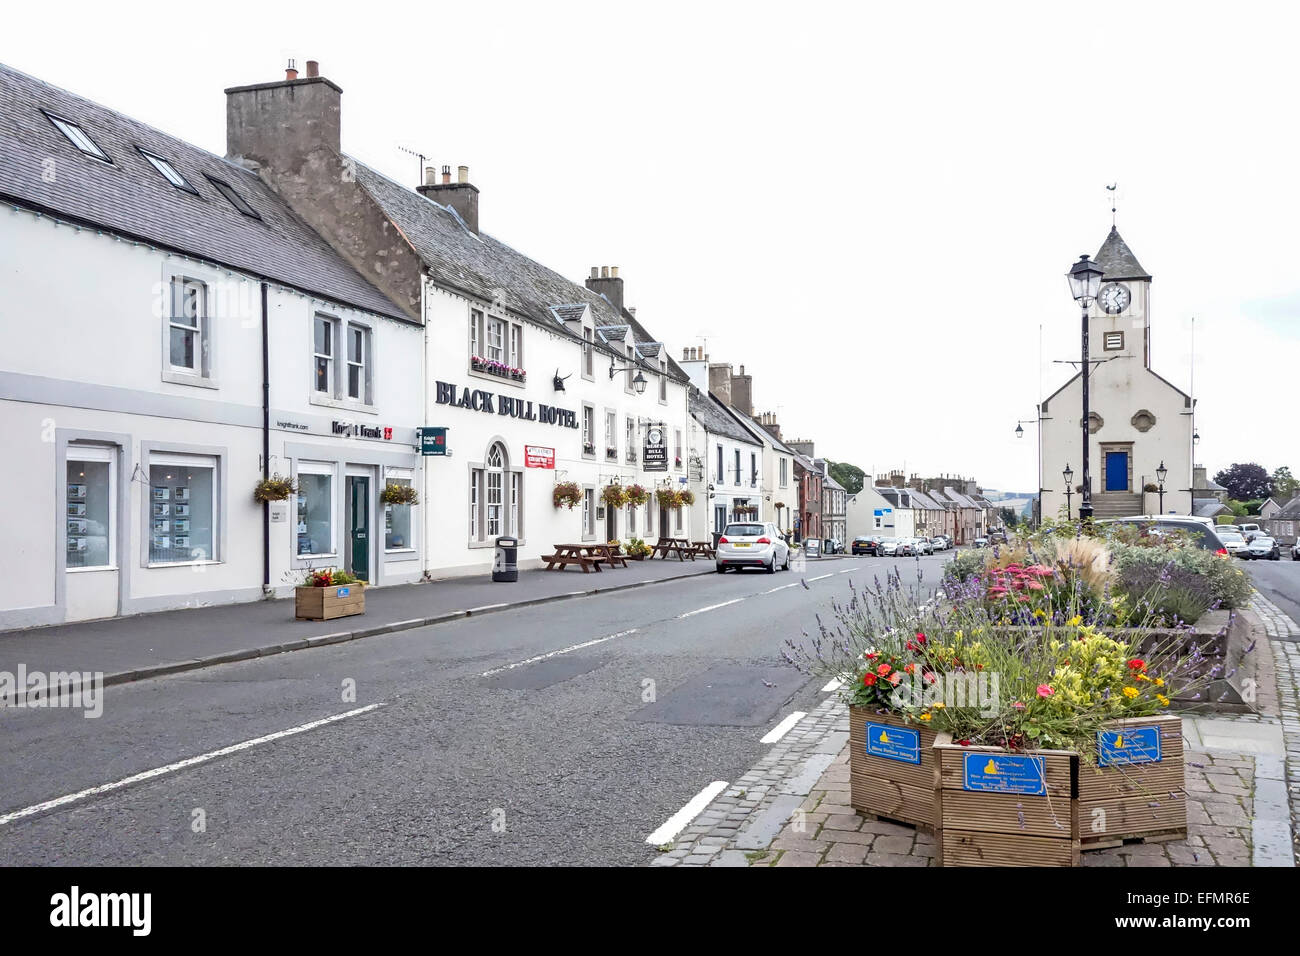 Main Street A68 in Lauder schottischen Grenze Schottland mit dem Black Bull Hotel Stockfoto